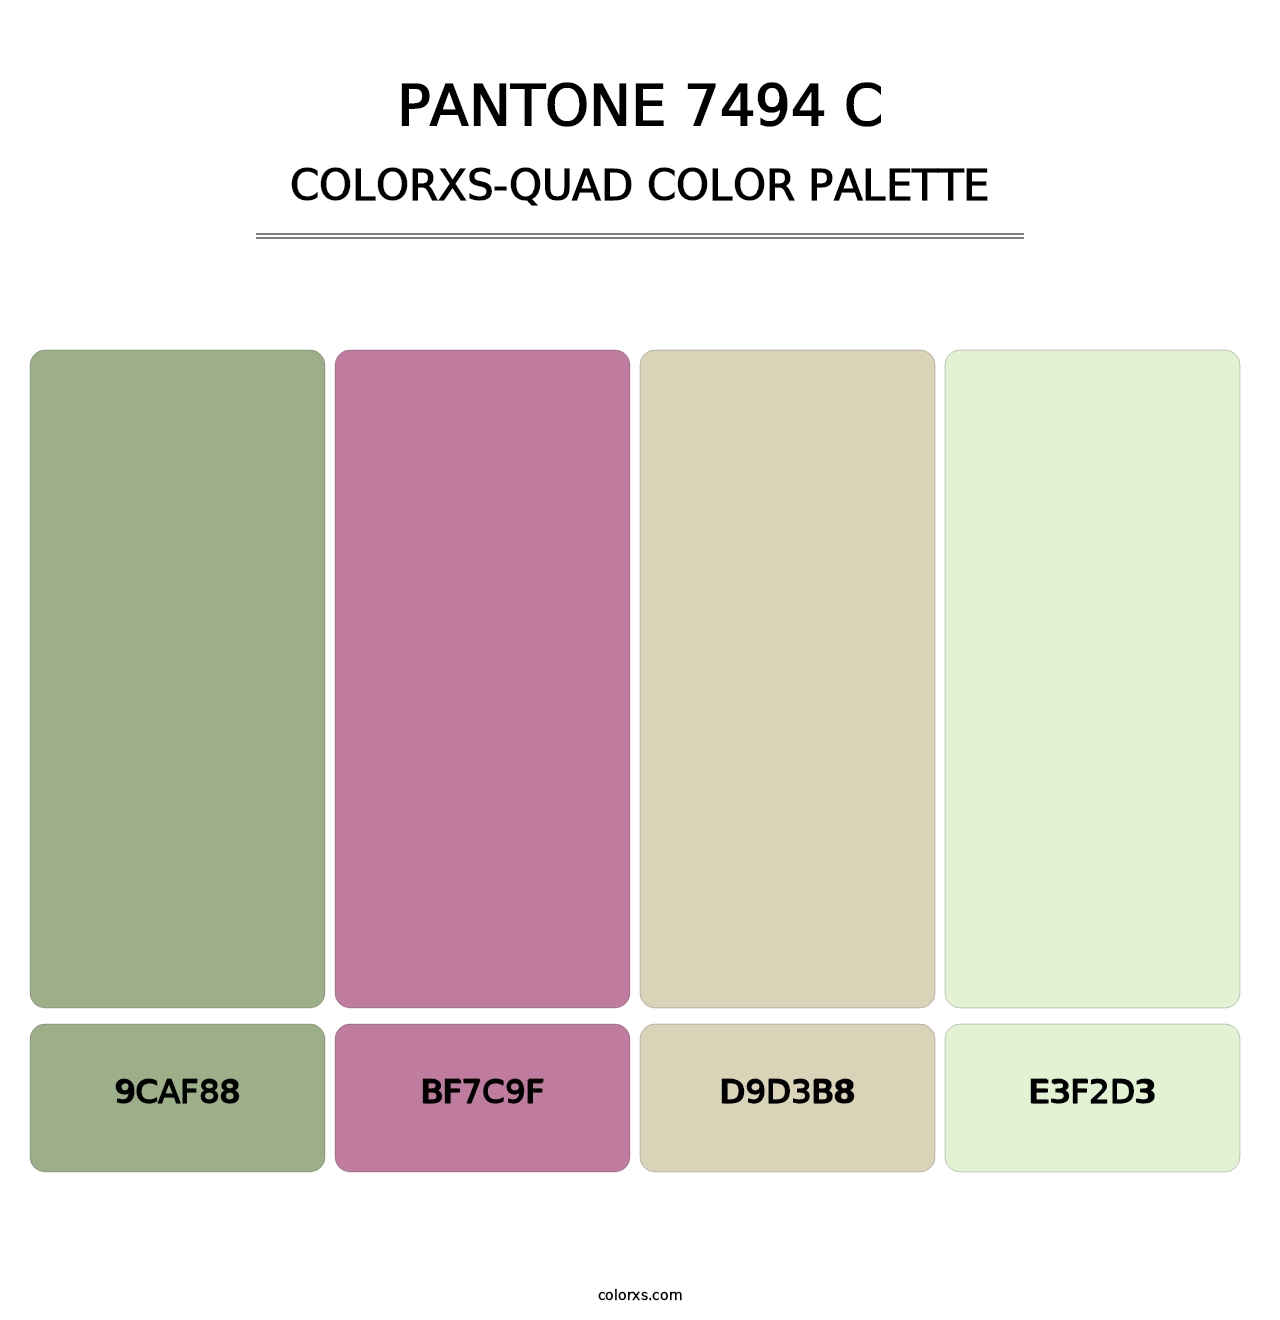 PANTONE 7494 C - Colorxs Quad Palette